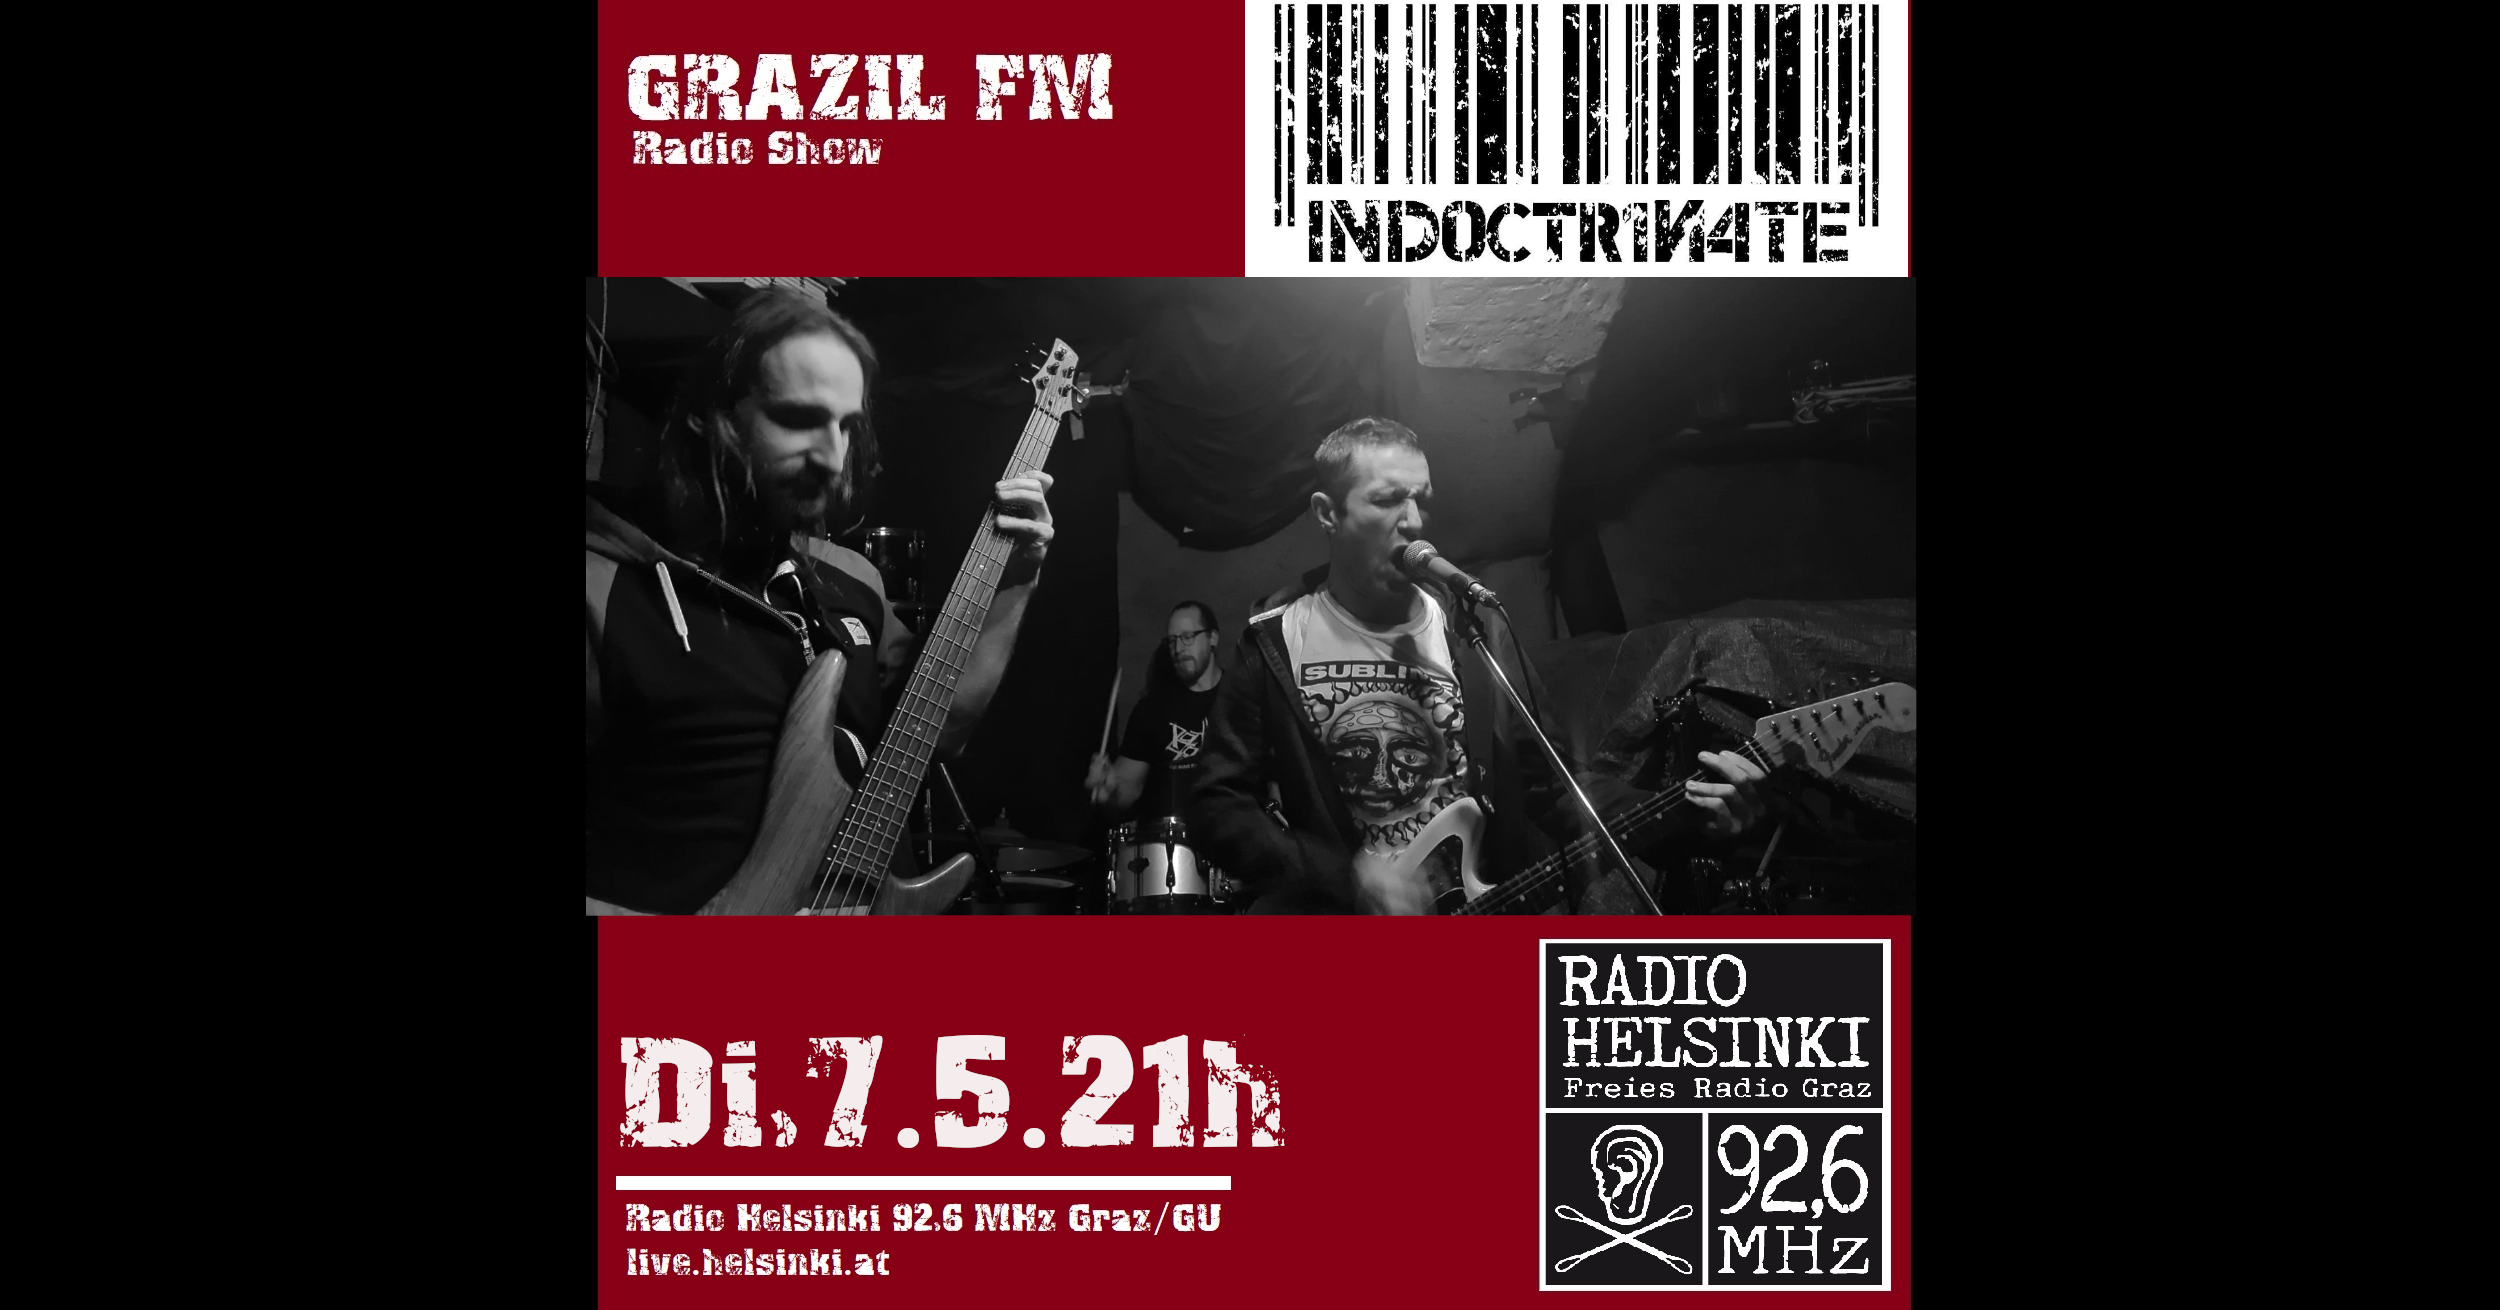 grazil FM Indoctrinate Radio Helsinki grazil Records